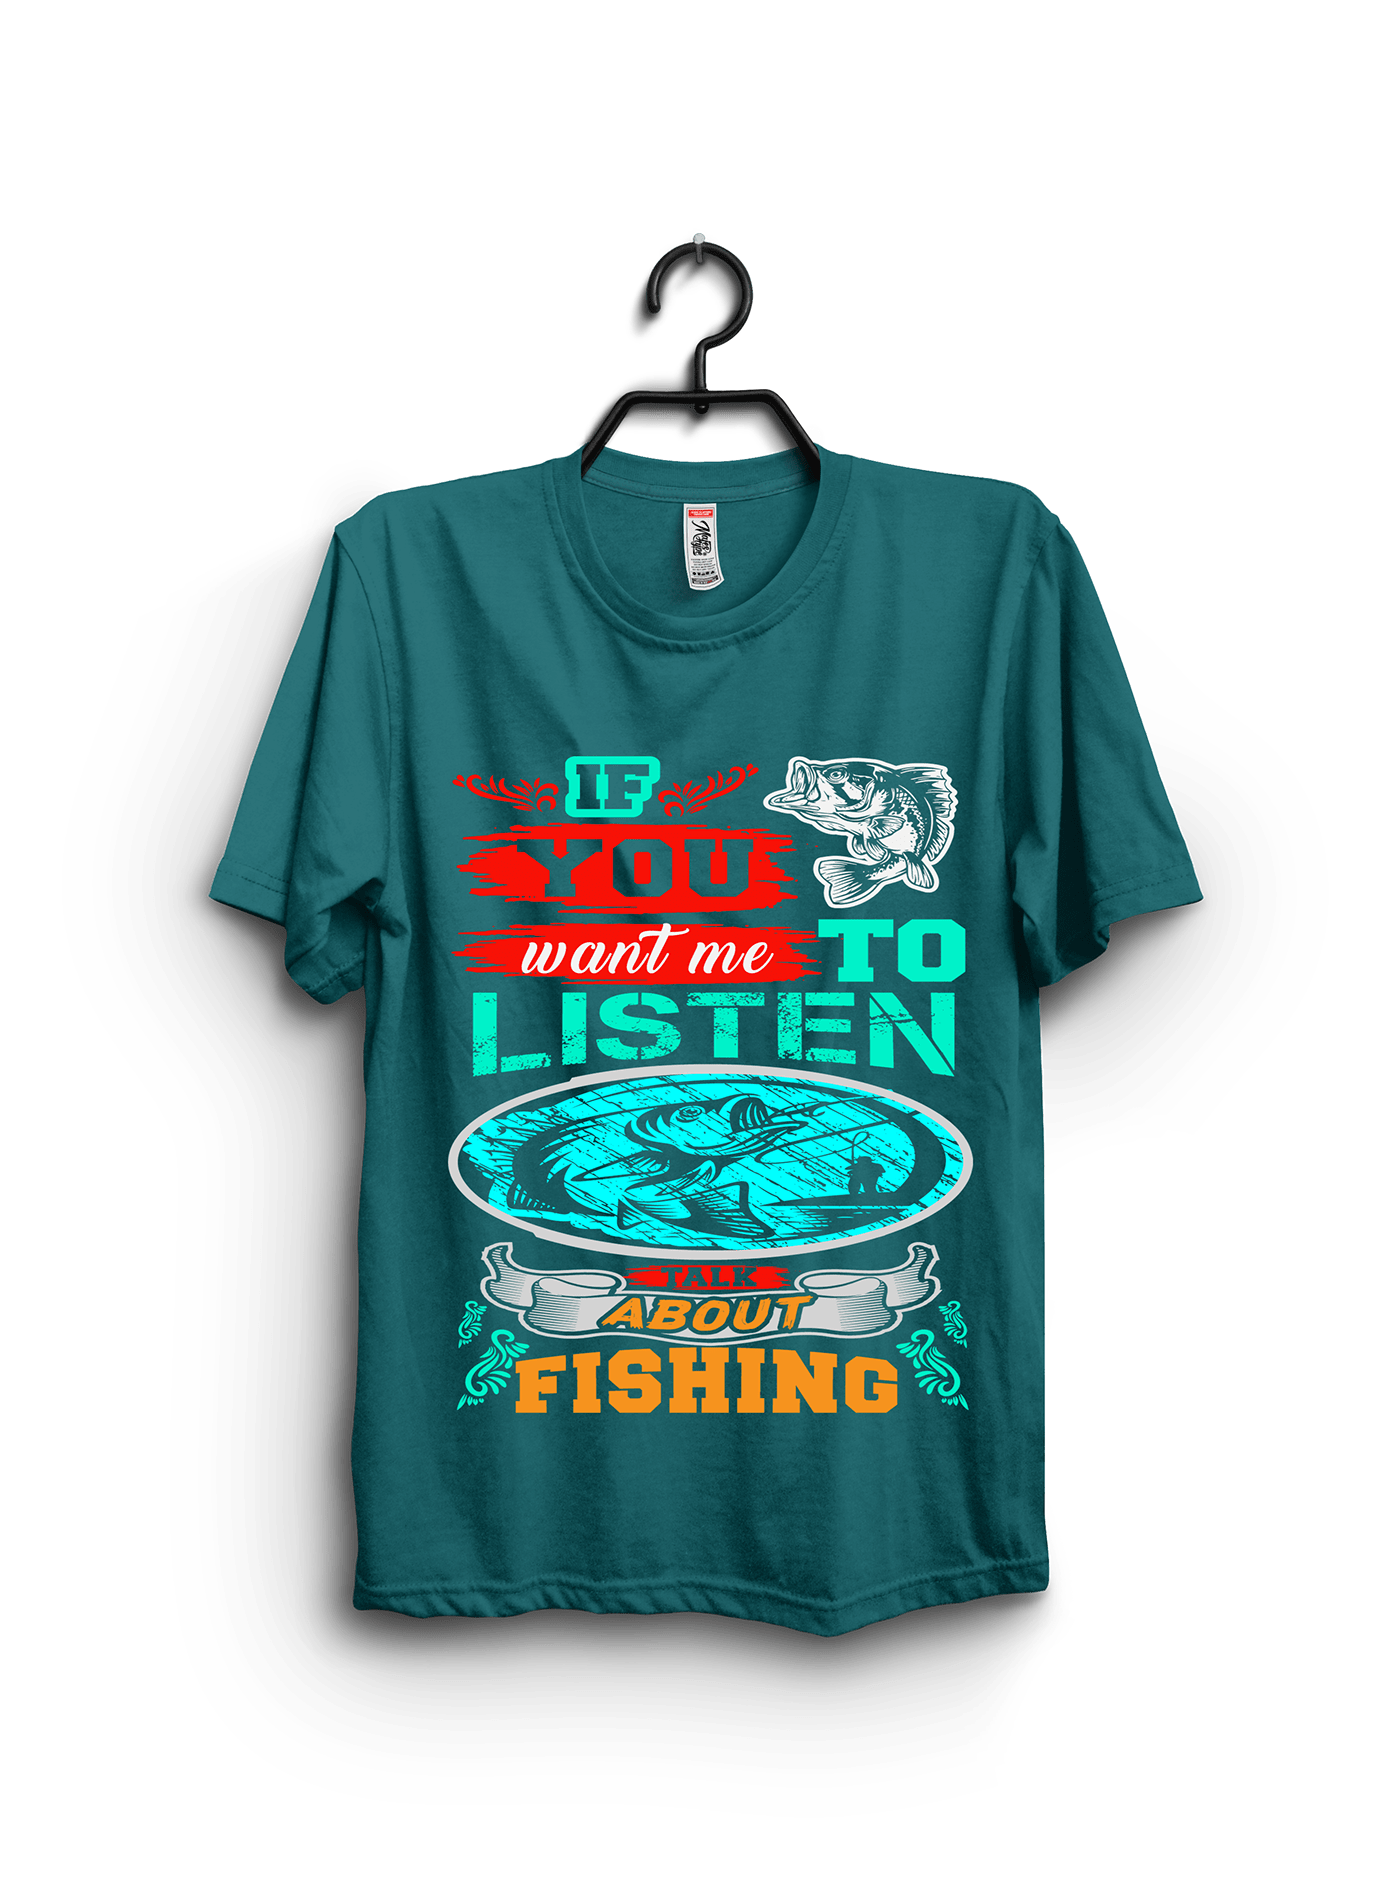 #Fishing t-shirt #fishing t-shirt design #t-shirt   fishing t-shirts amazon best fishing t shirt bulk t-shirt design custom t-shirt design Typography t-shirt design Dog t-shirt Design